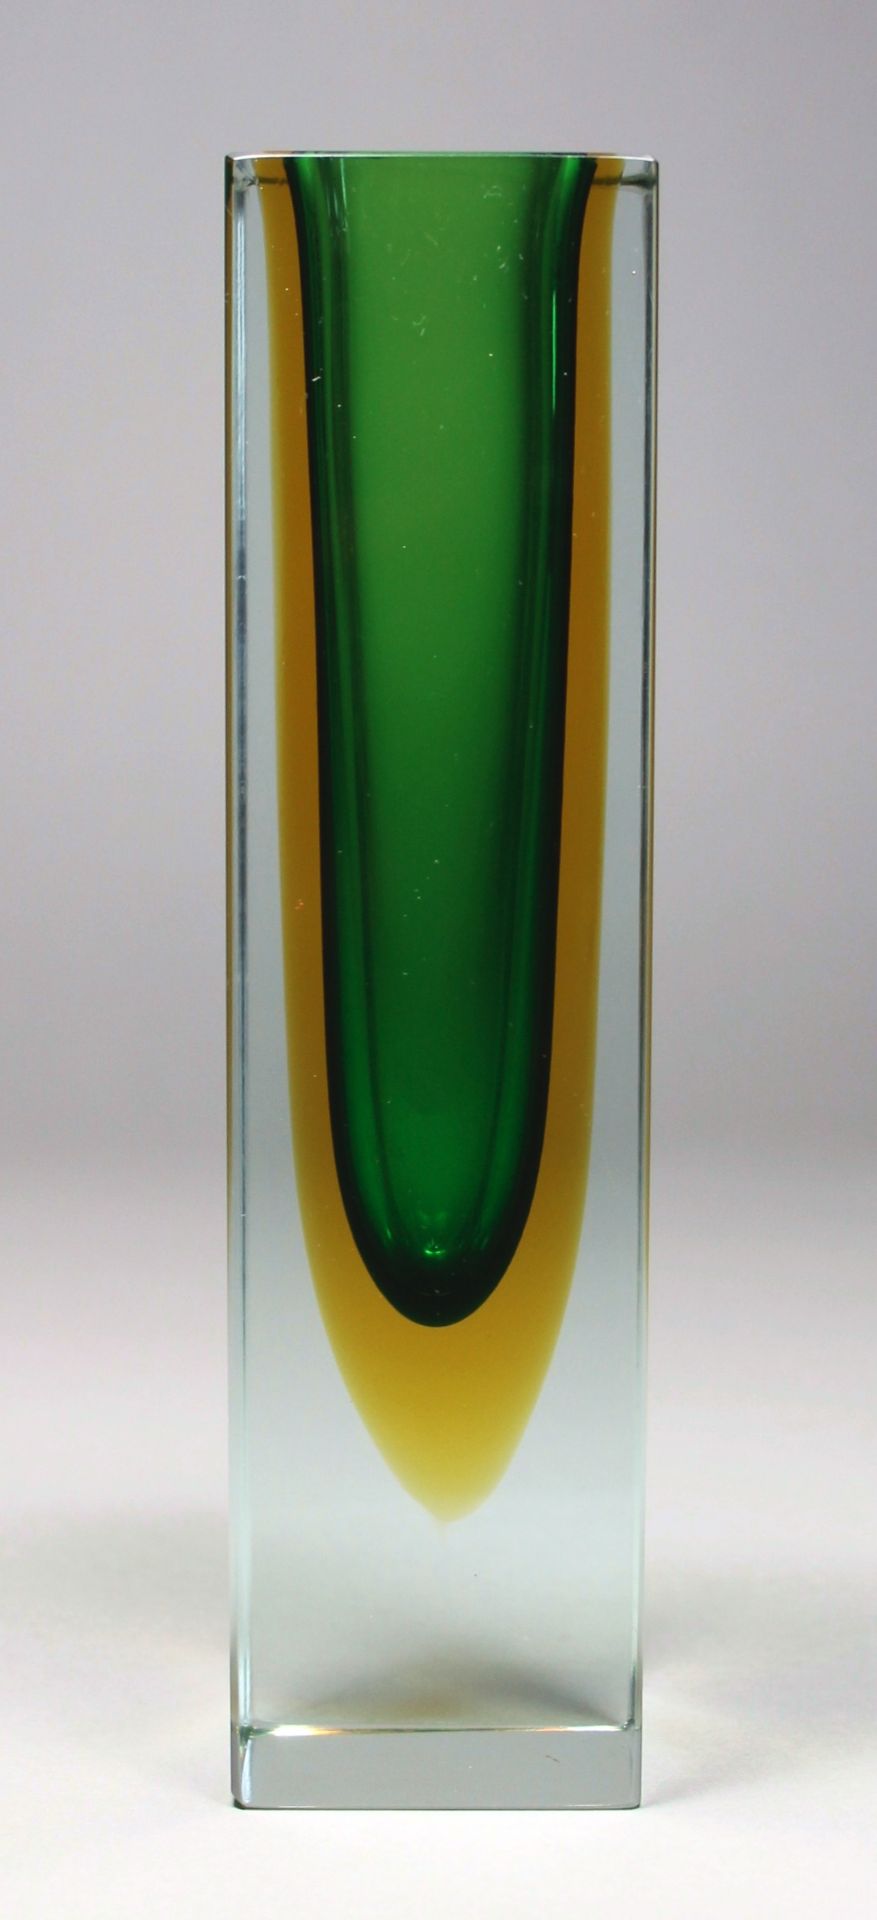 1 Vierkantvase "Murano, Sommerso", farbloses Glas honiggelb und grün unterfangen, 1970-1979, H ca.